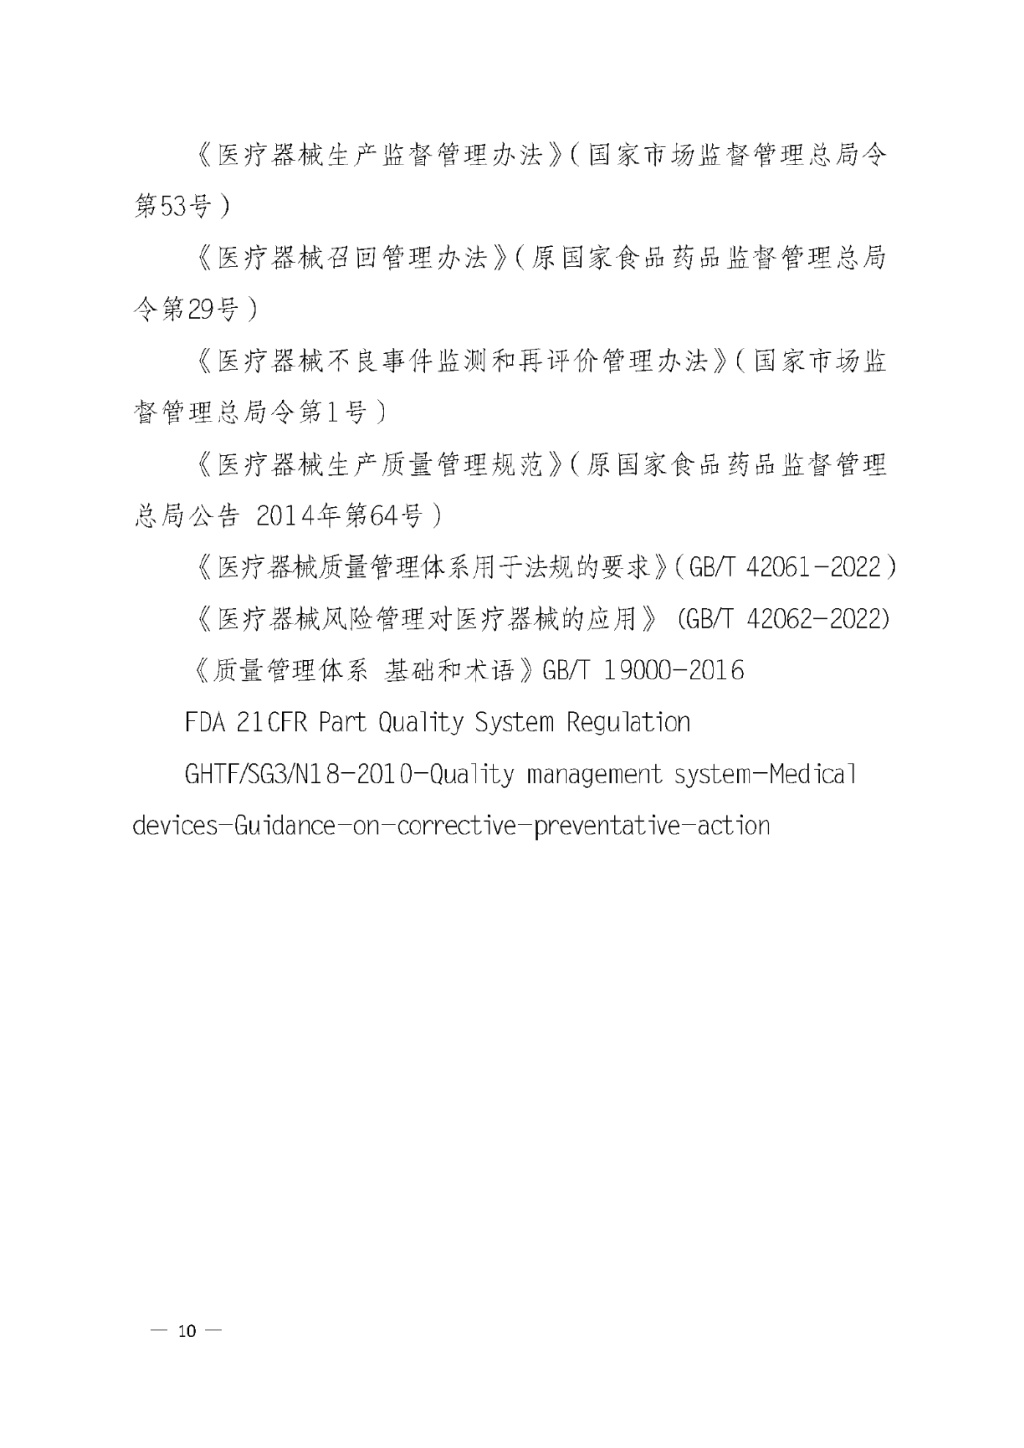 【安徽】发布医疗器械质量管理分析改进工作指南(图10)